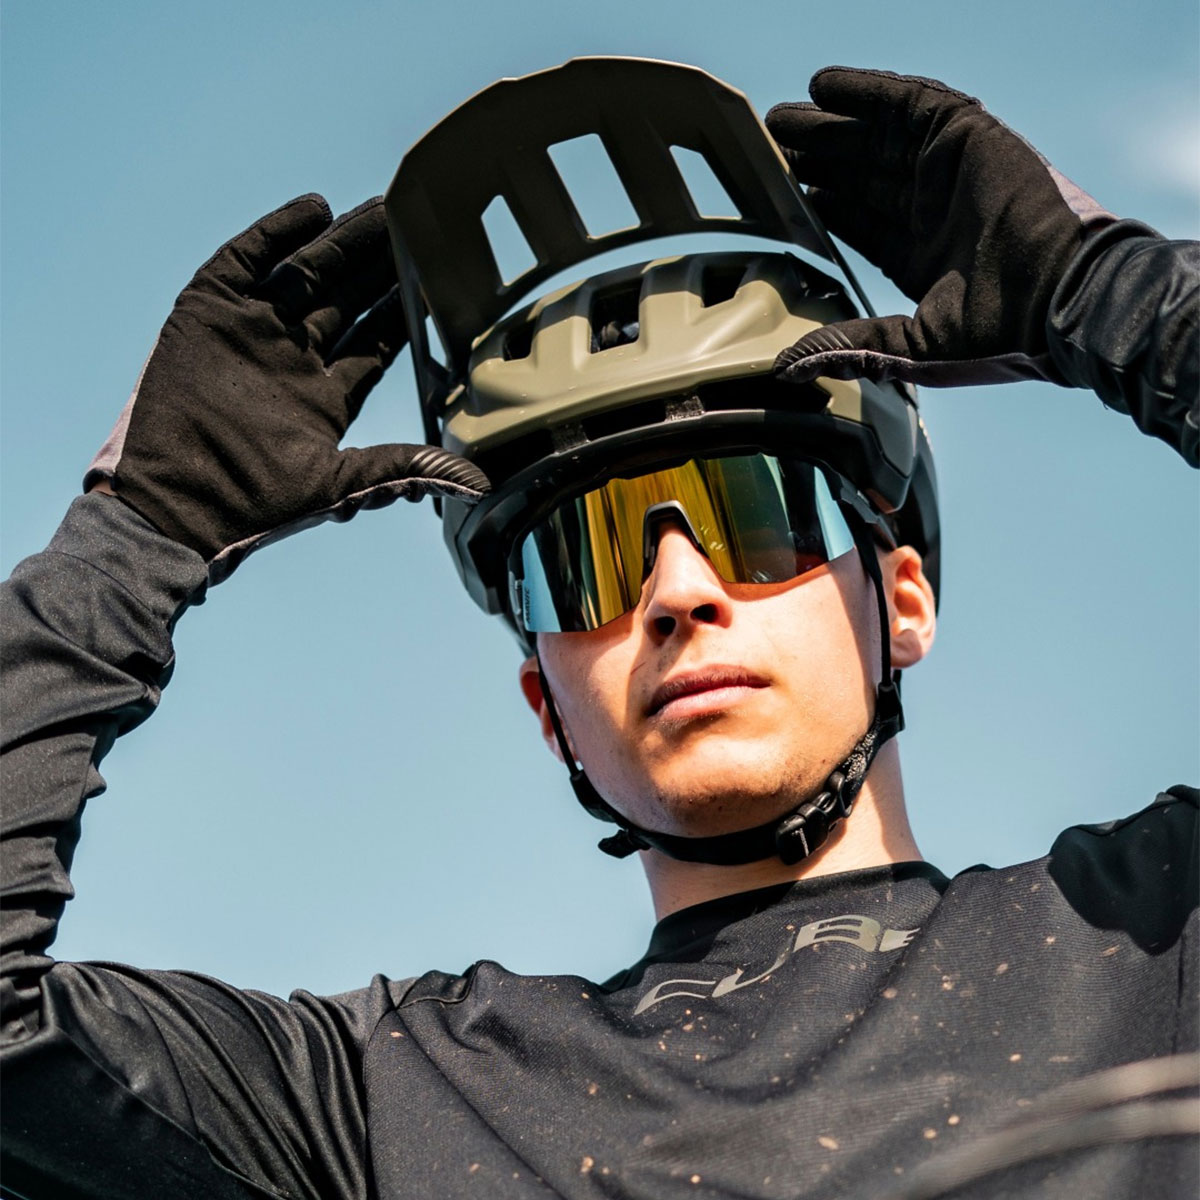 Mavic se estrena en el segmento de las gafas de ciclismo con el lanzamiento de las MVS Aeroframe y MVS Shield